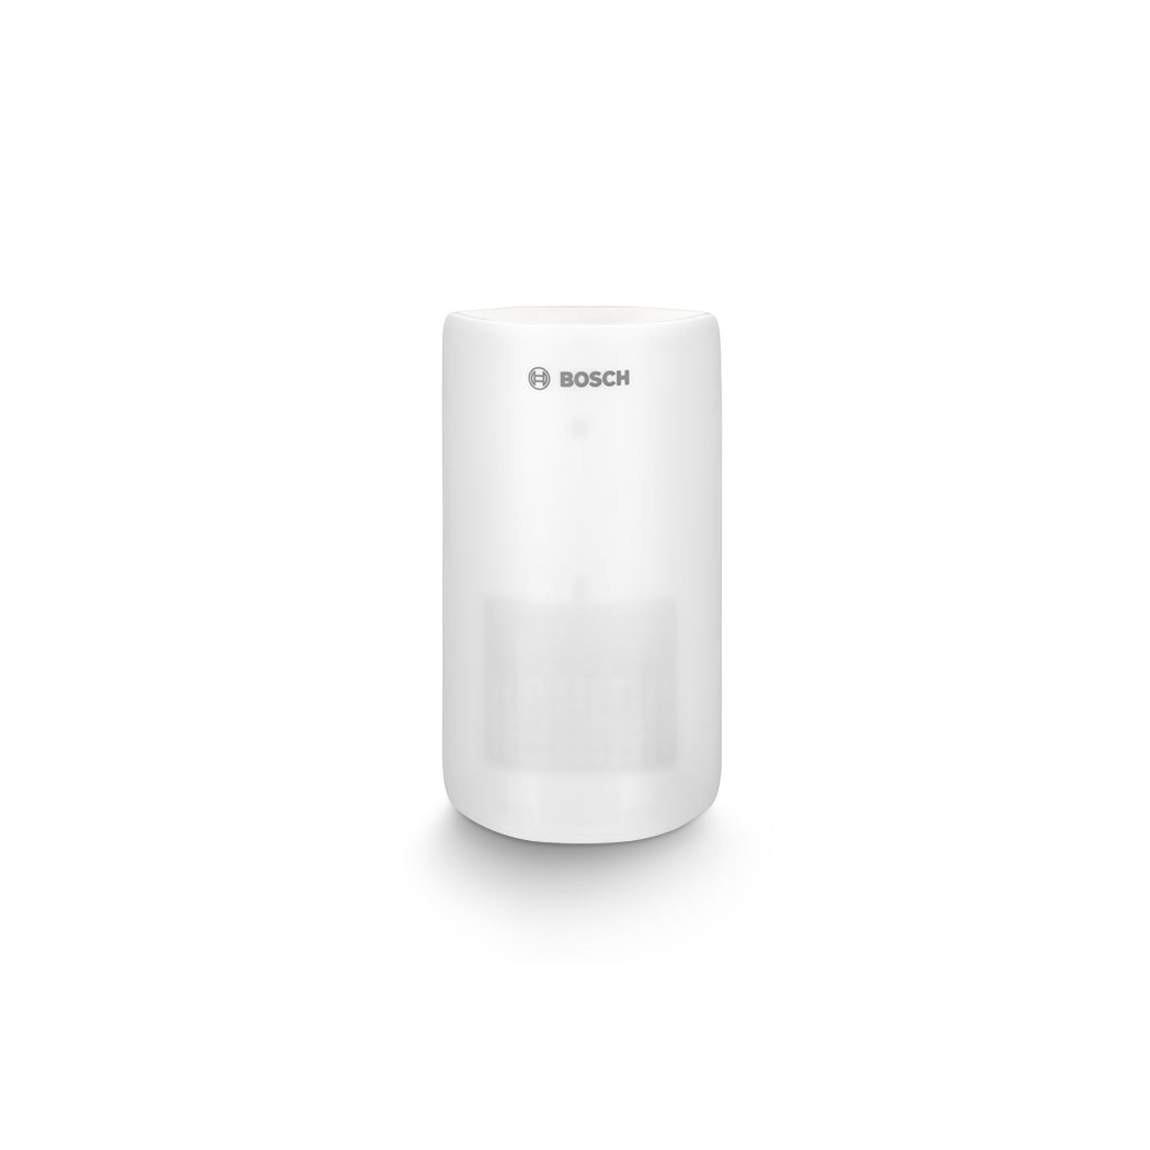 Bosch Smart Home - Starter Set Alarm_Bewegungsmelder